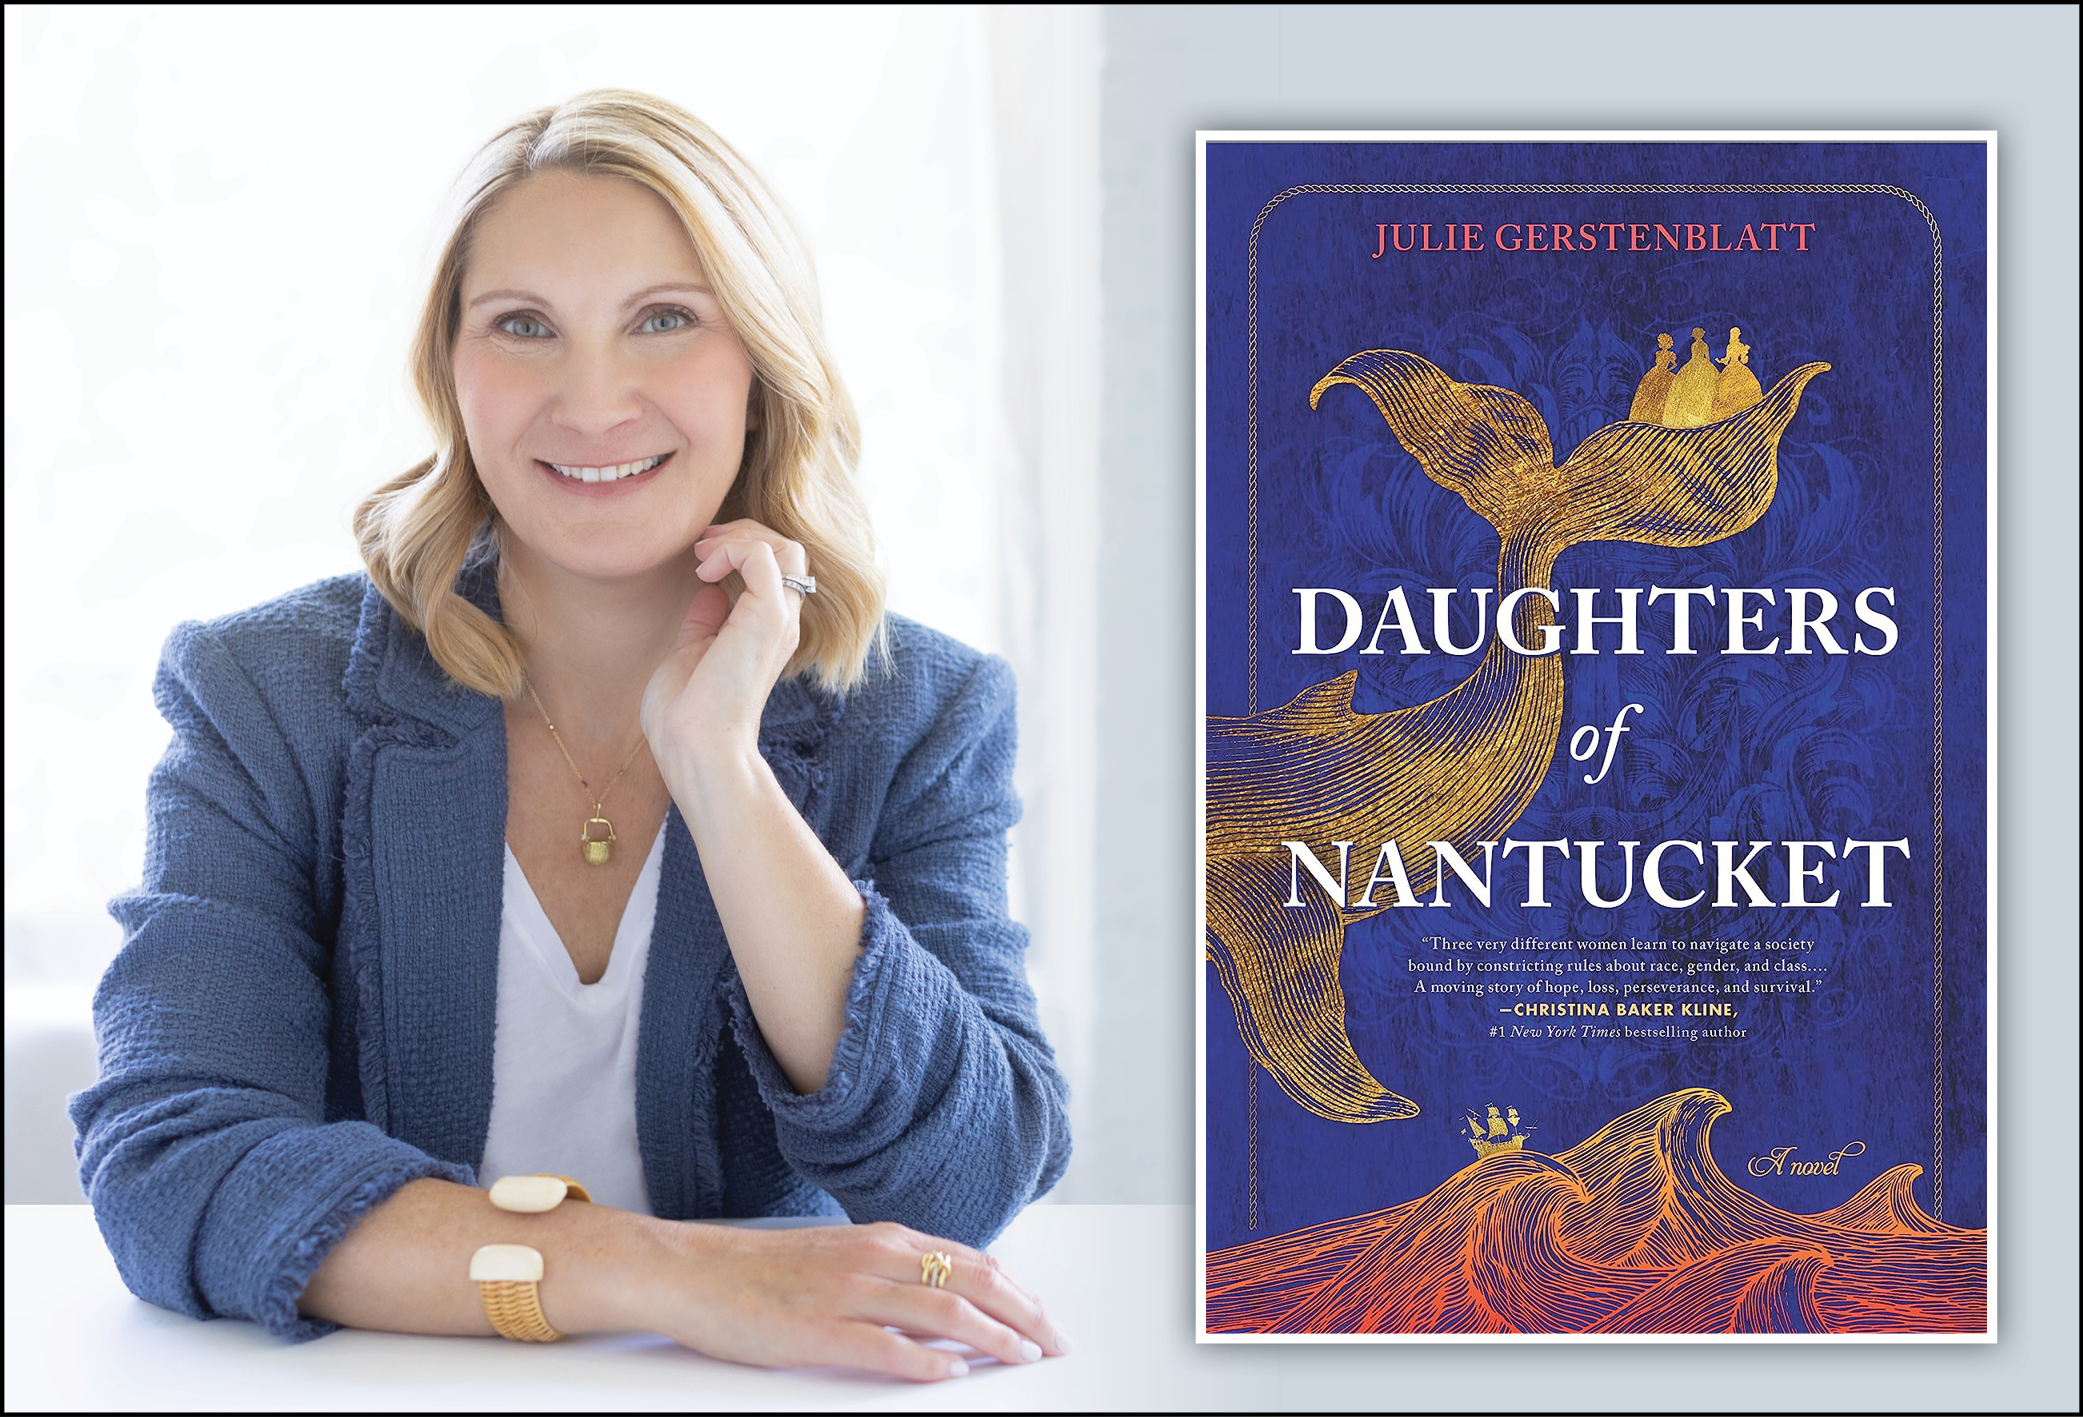 Tuesday, June 25 Daughters of Nantucket by Julie Gerstenblatt